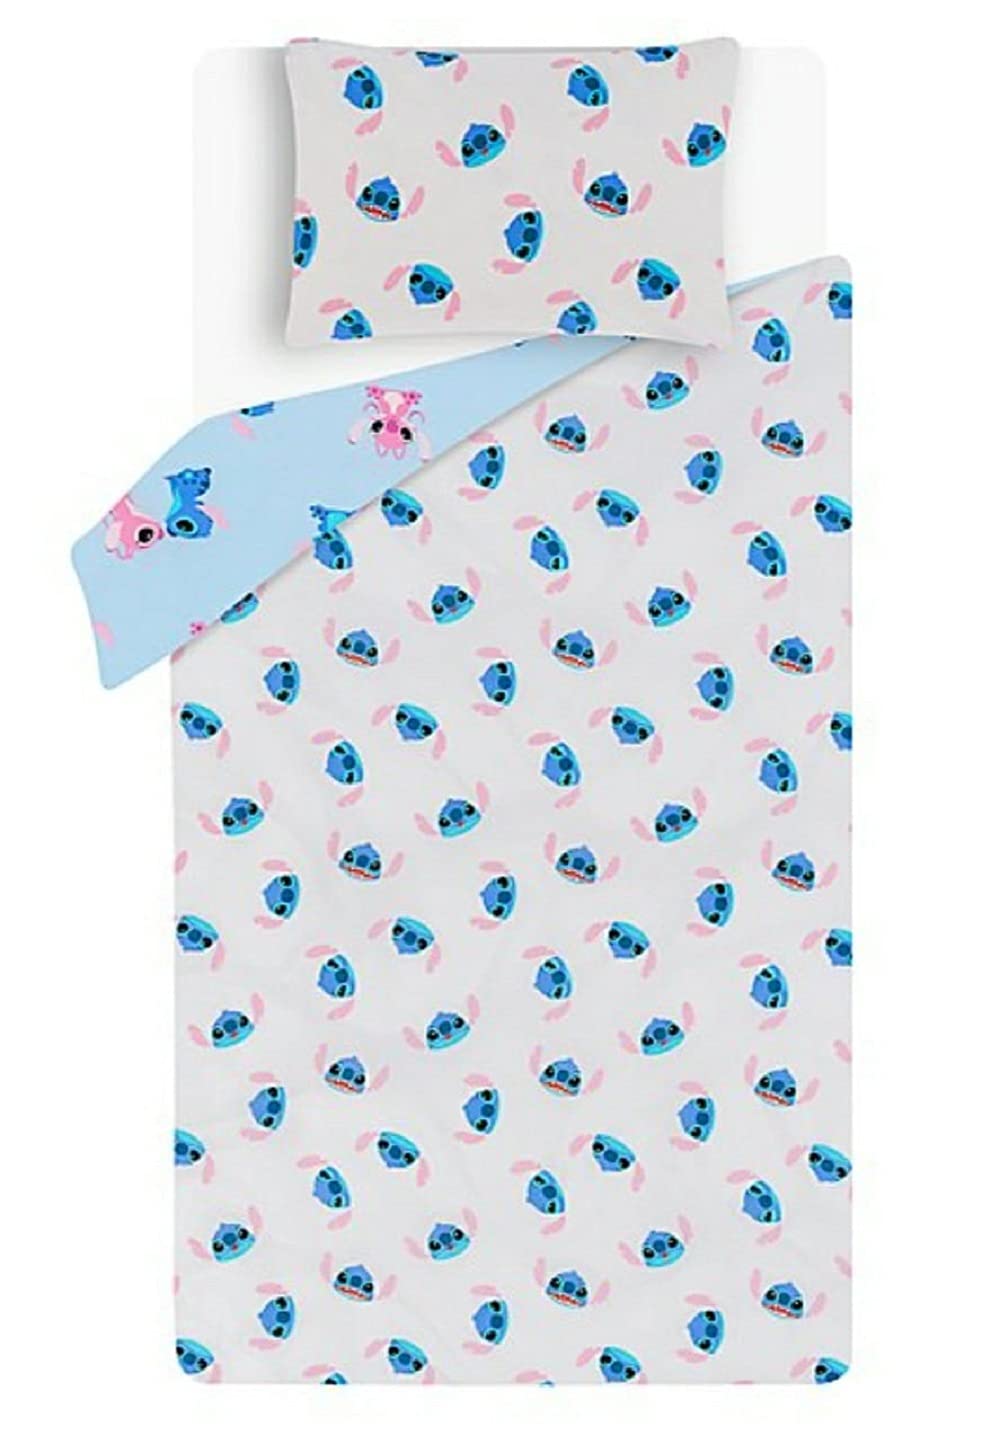 Disney Lilo & Stitch Single Reversible Duvet Cover Pillow Case Bedding Set